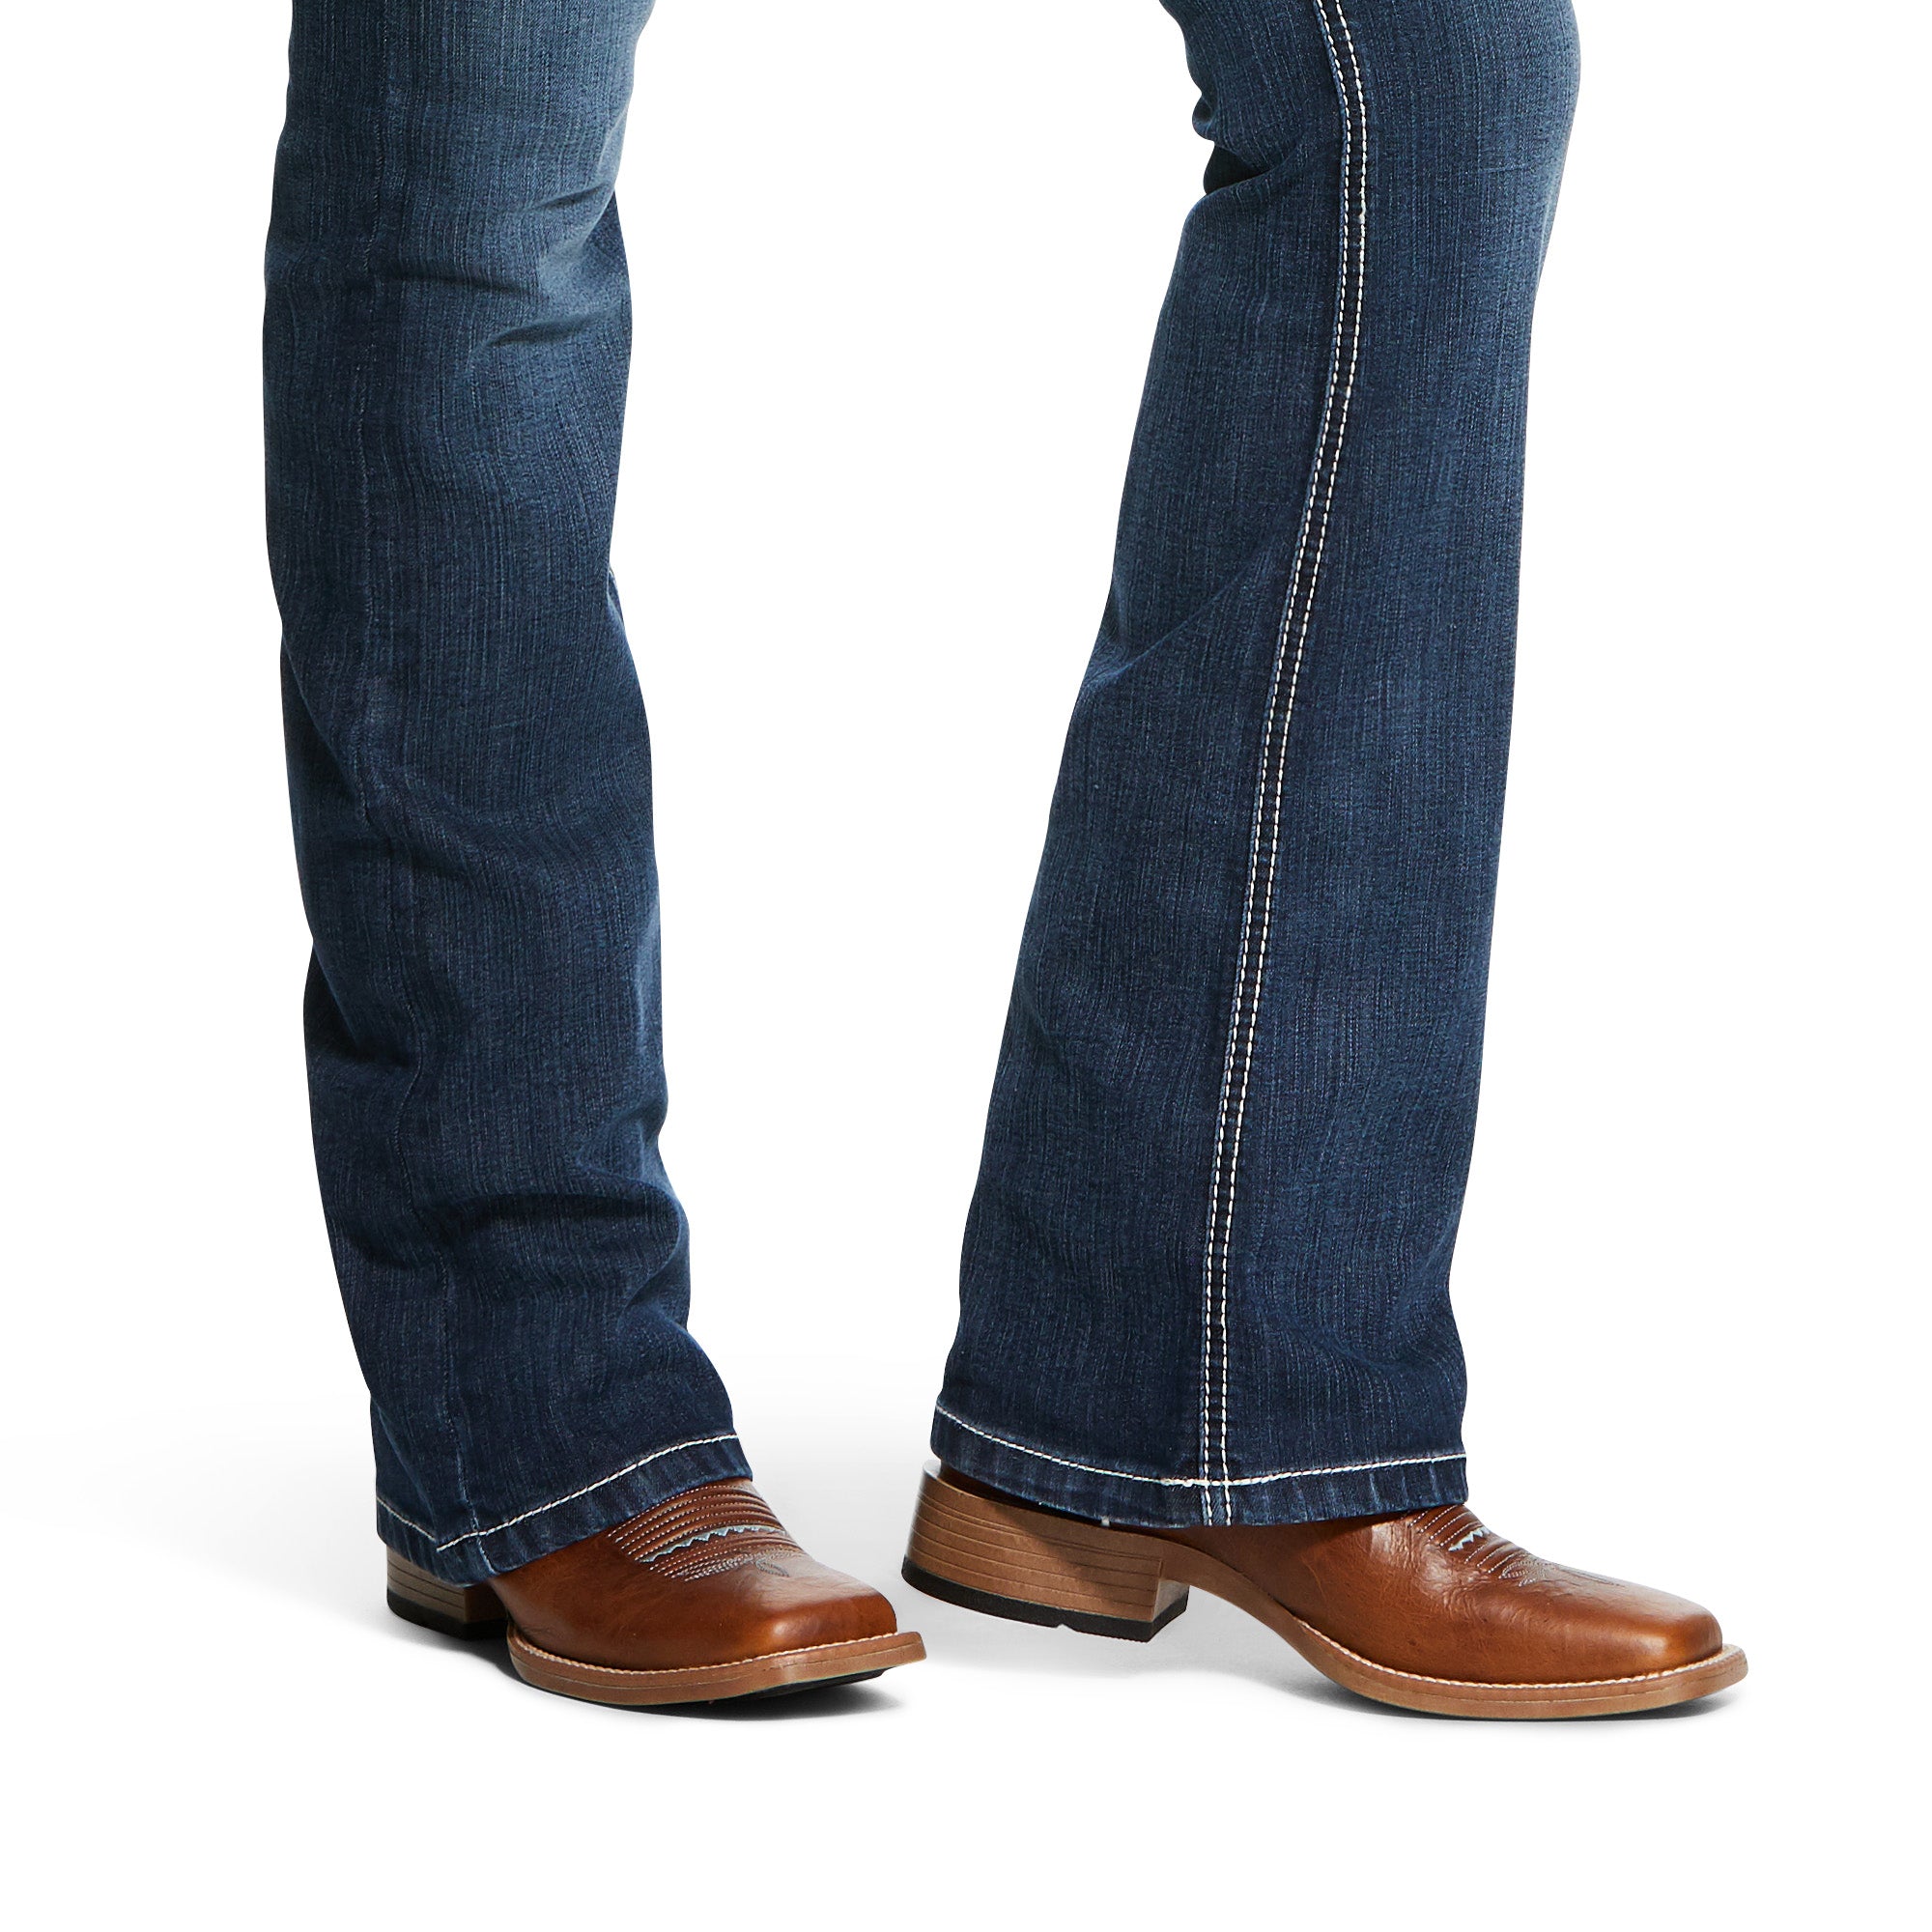 Men's Boot Cut Cowboy Jeans. Pantalon De Hombre Corte De Bota.